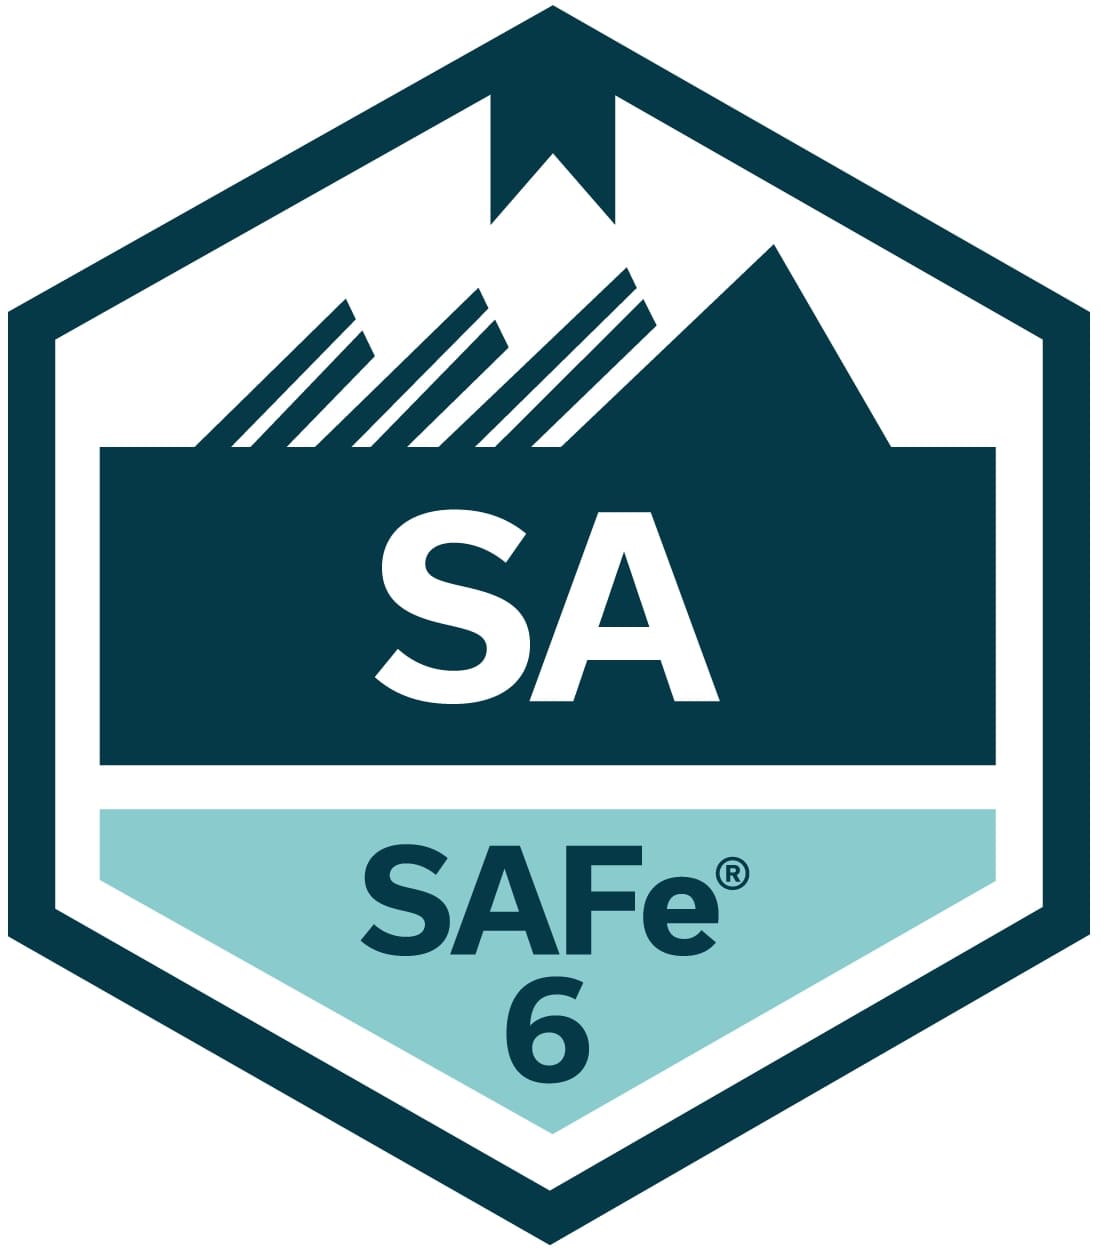 Leading SAFe 6 training